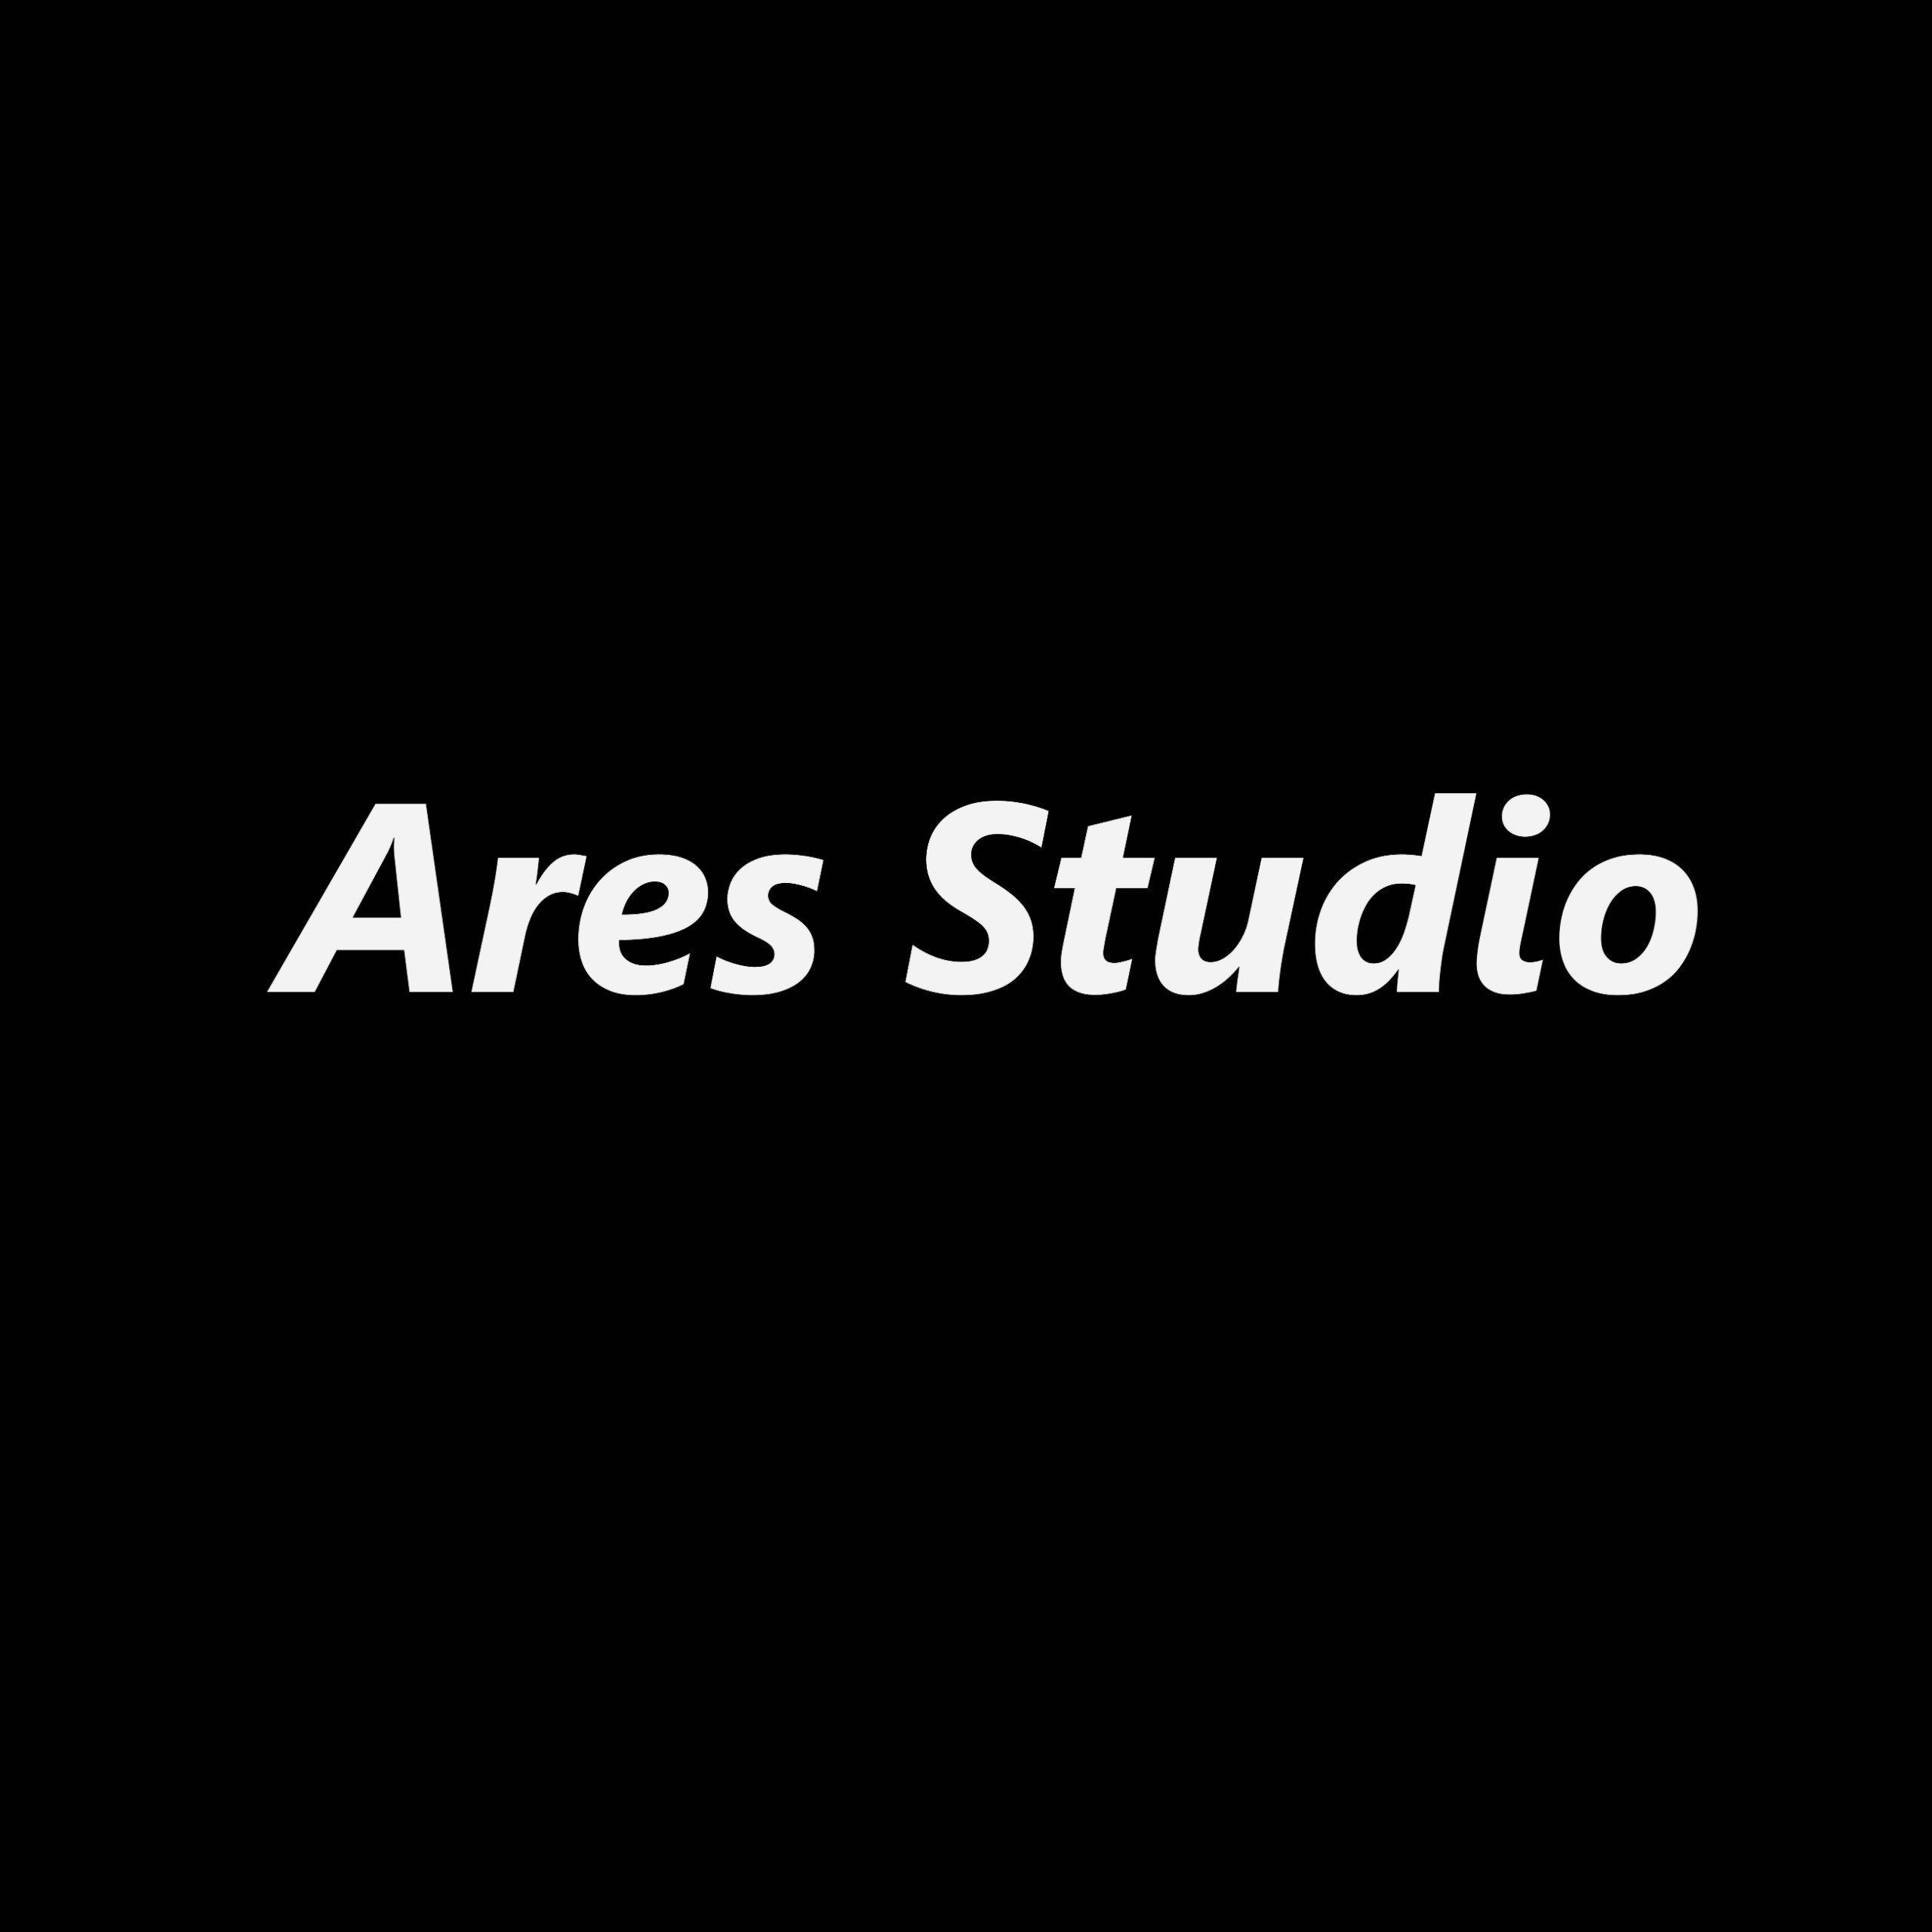 Ares studio